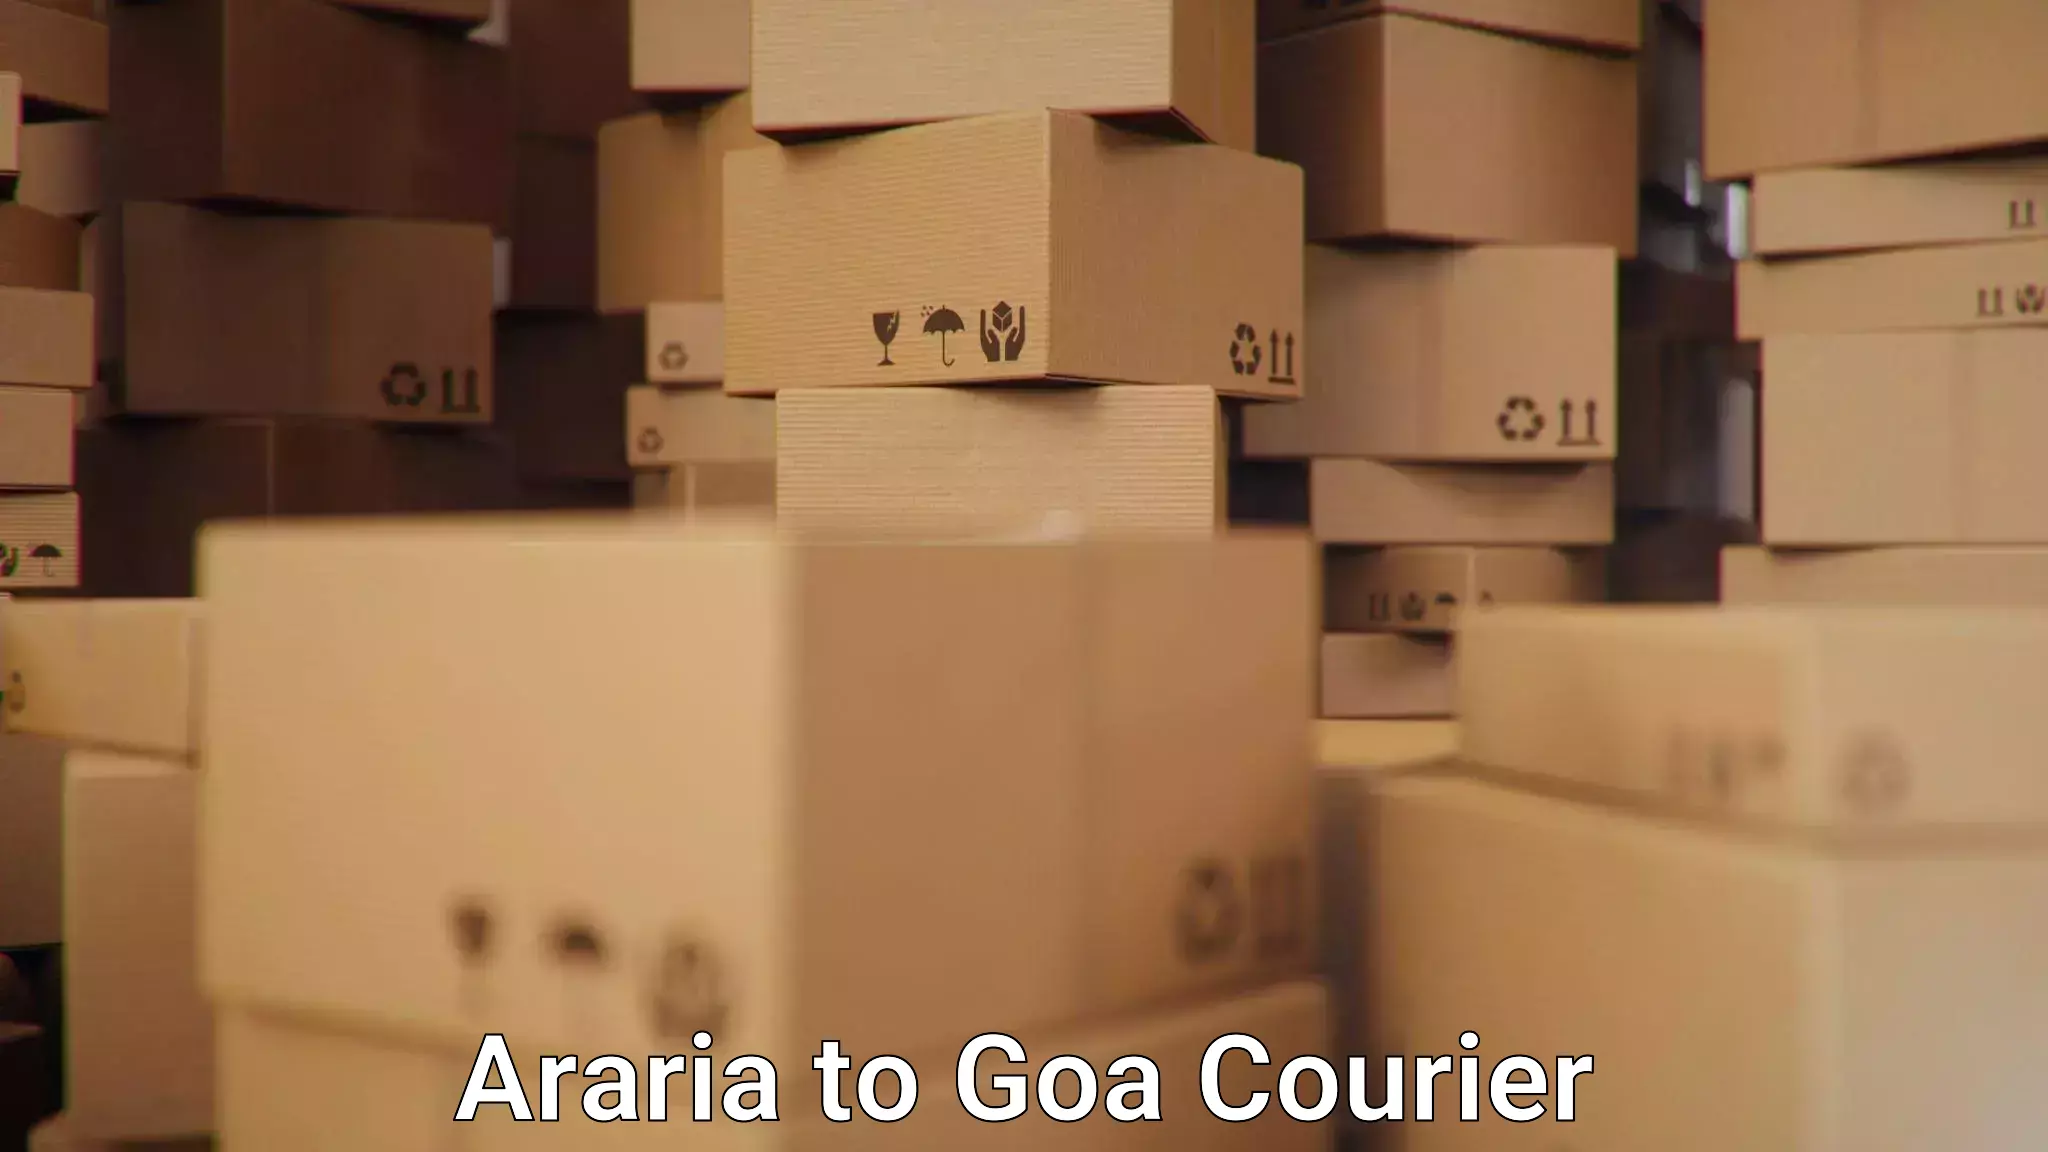 Smart logistics solutions Araria to Goa